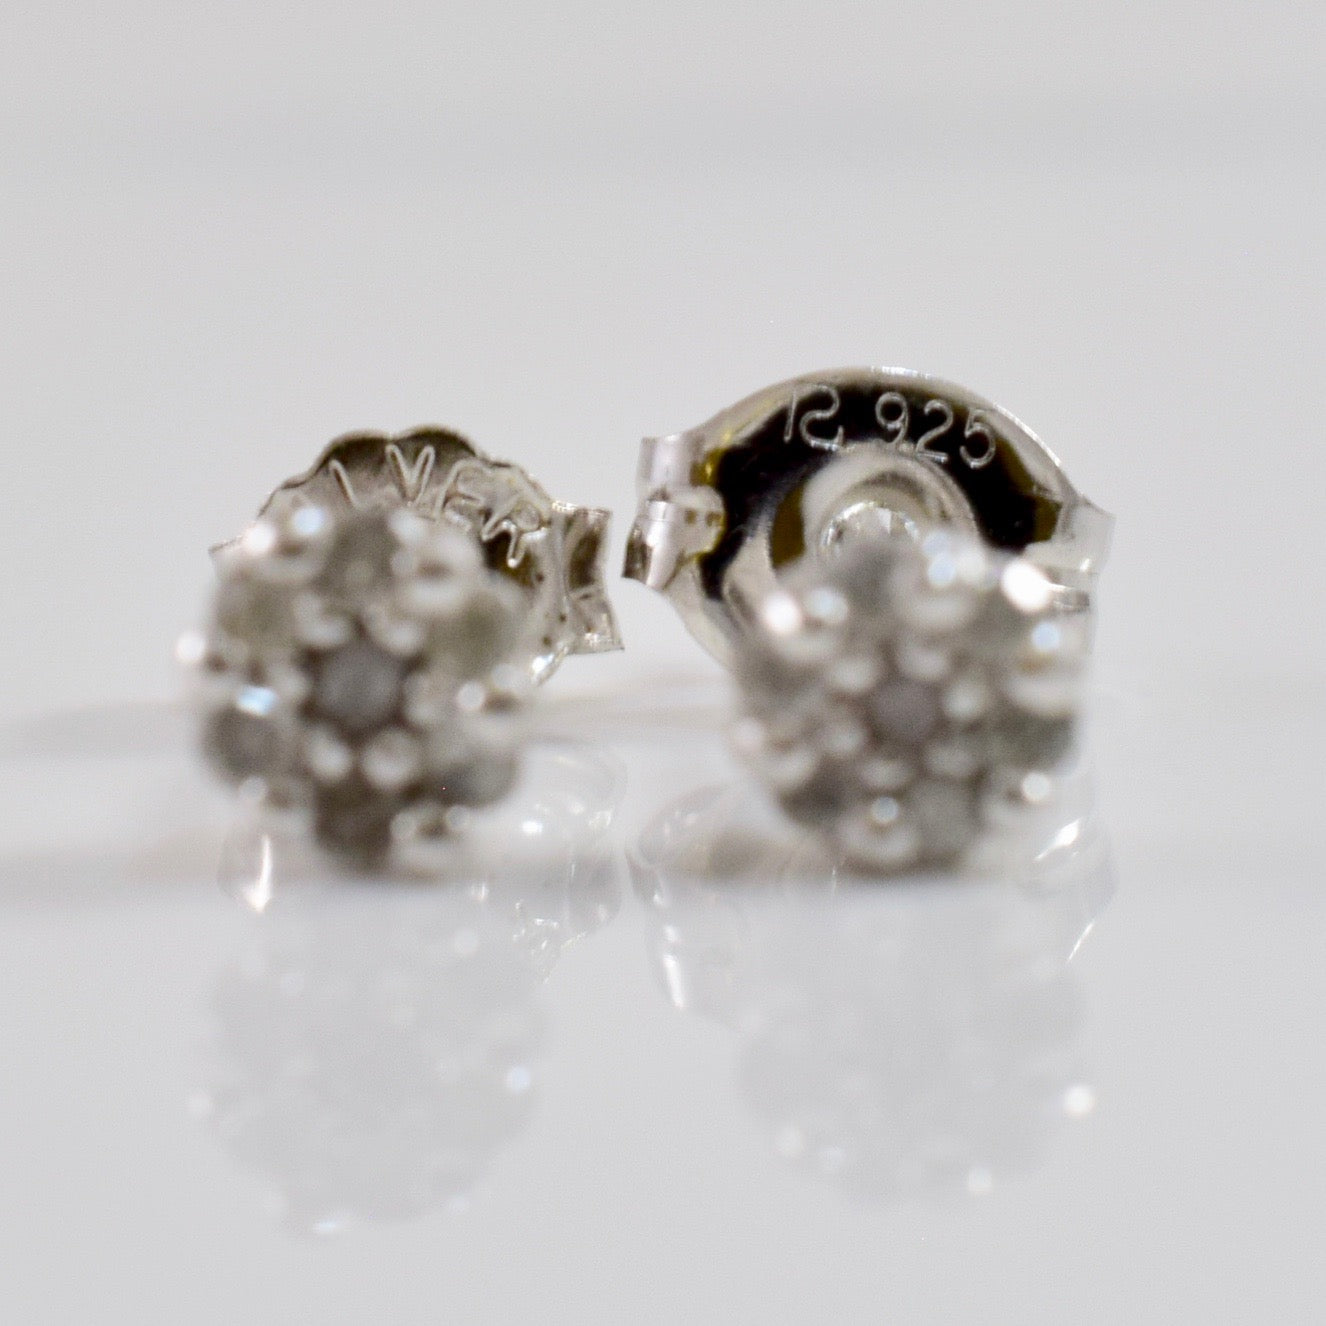 Silver Diamond Stud Earrings | 0.07 ctw |